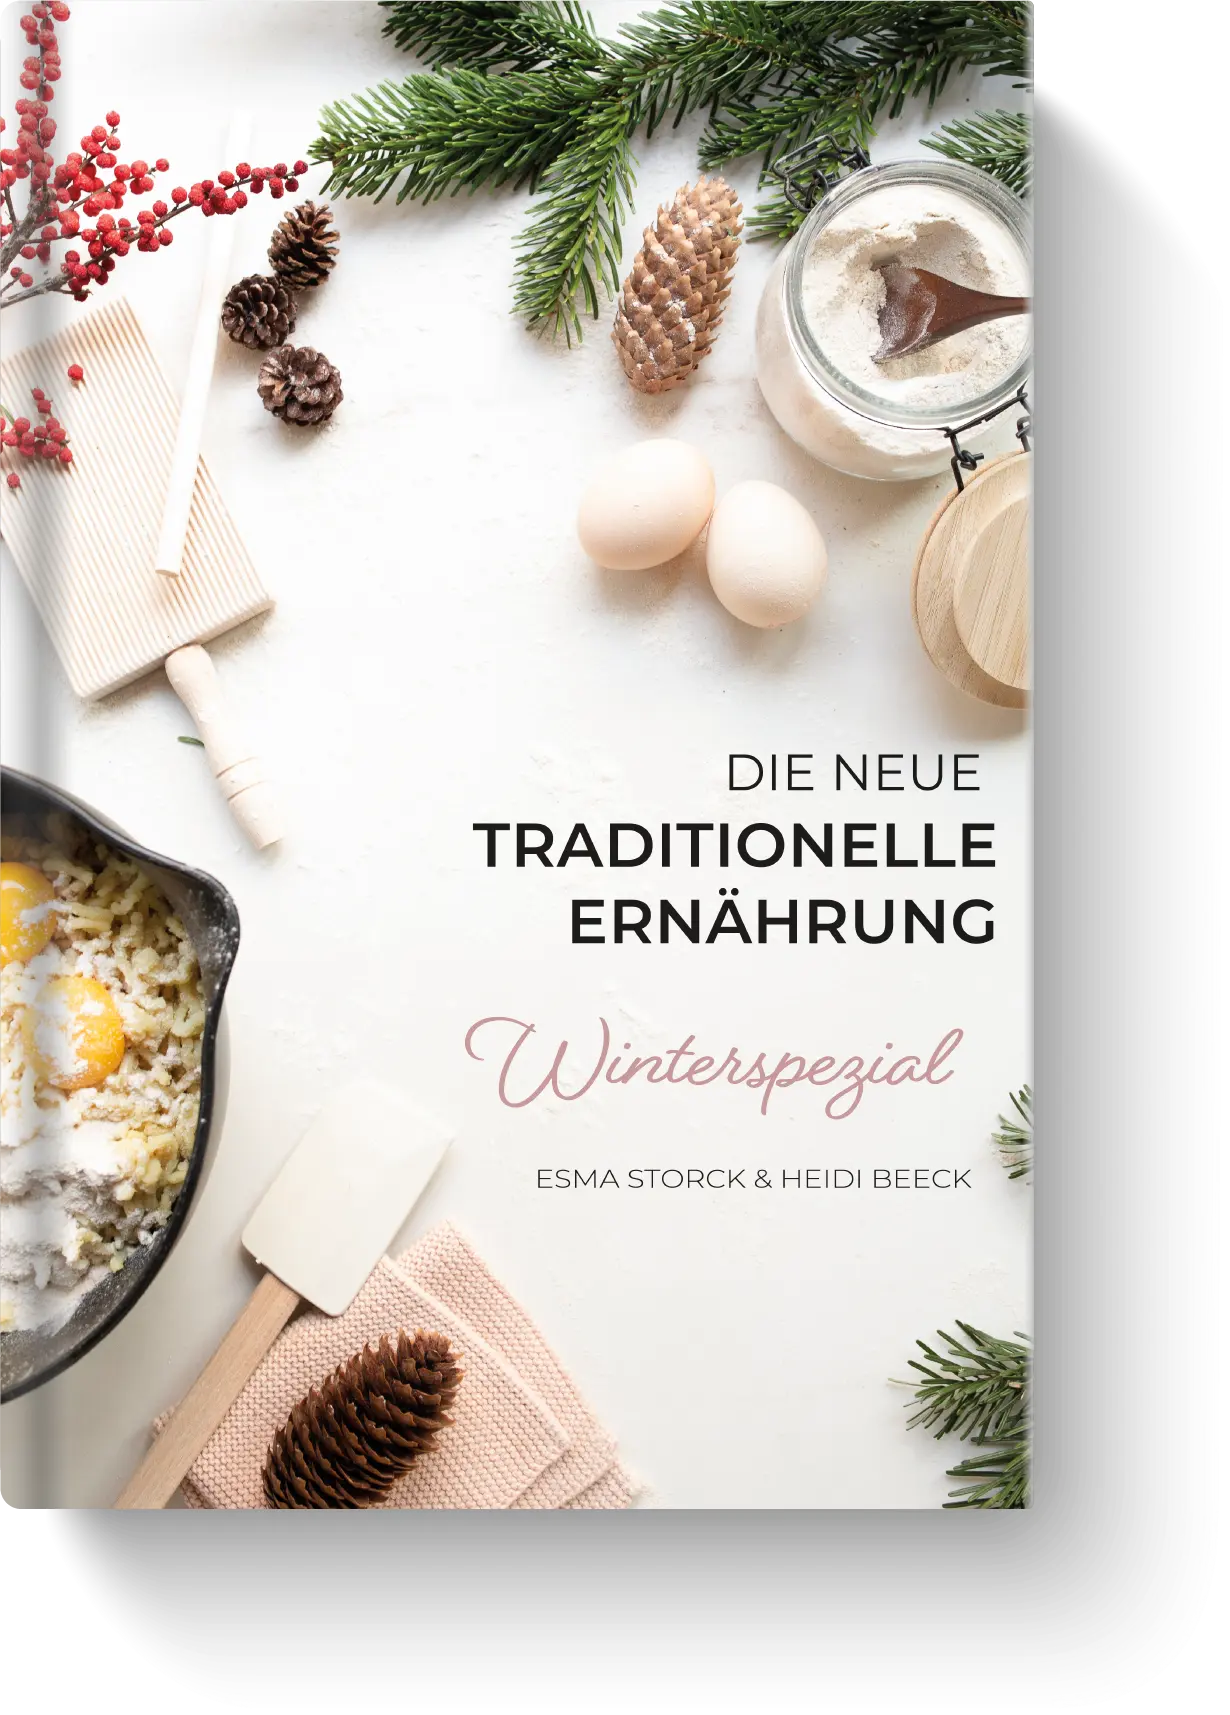 Die neue traditionelle Ernährung - Winterspezial Kochbuch